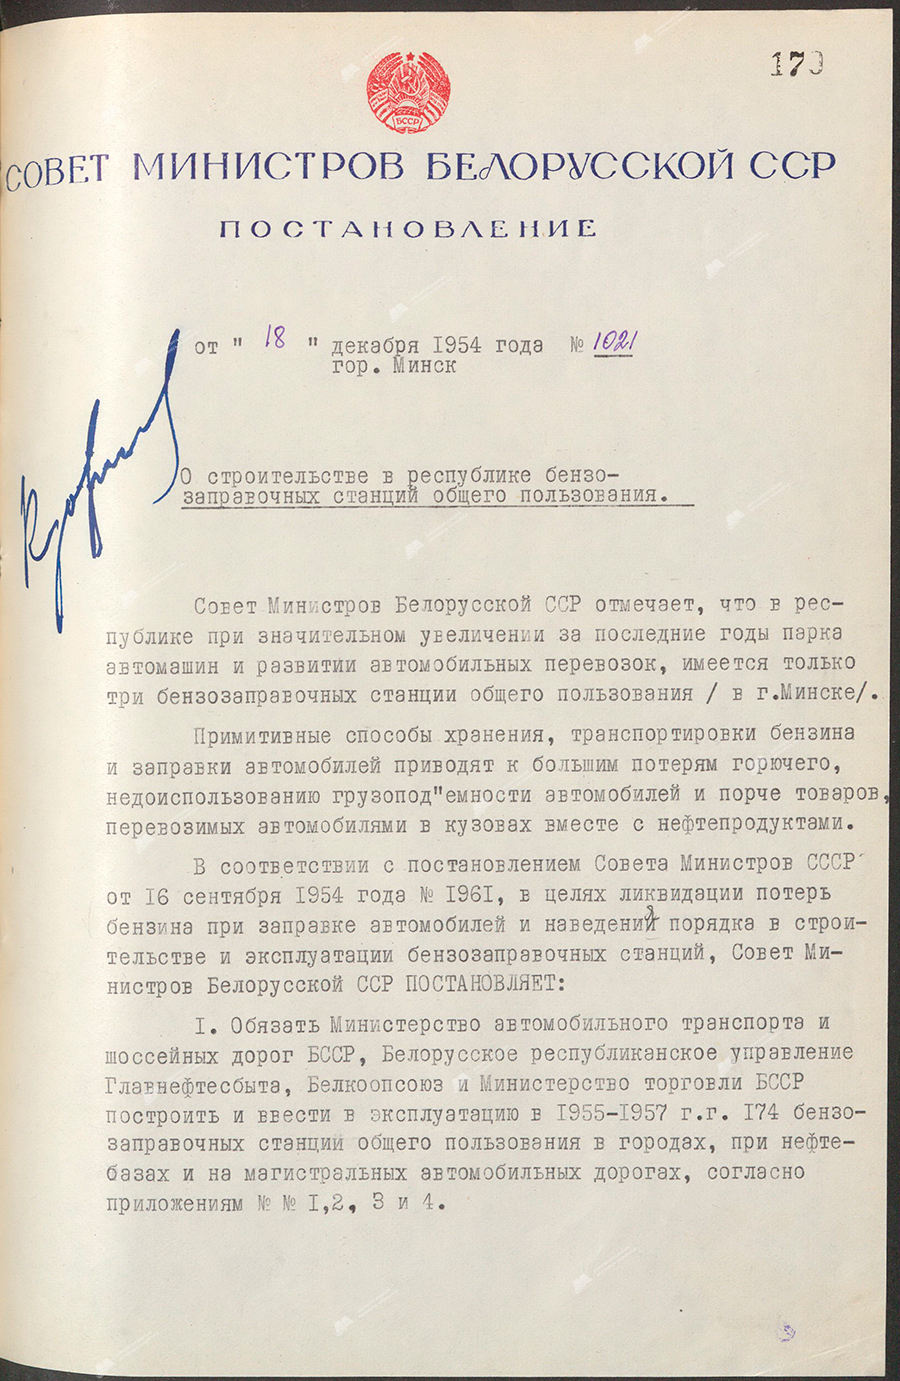 Beschluss Nr. 1021 des Ministerrats der Weißrussischen SSR «Über den Bau öffentlicher Gastankstellen in der Republik»-стр. 0